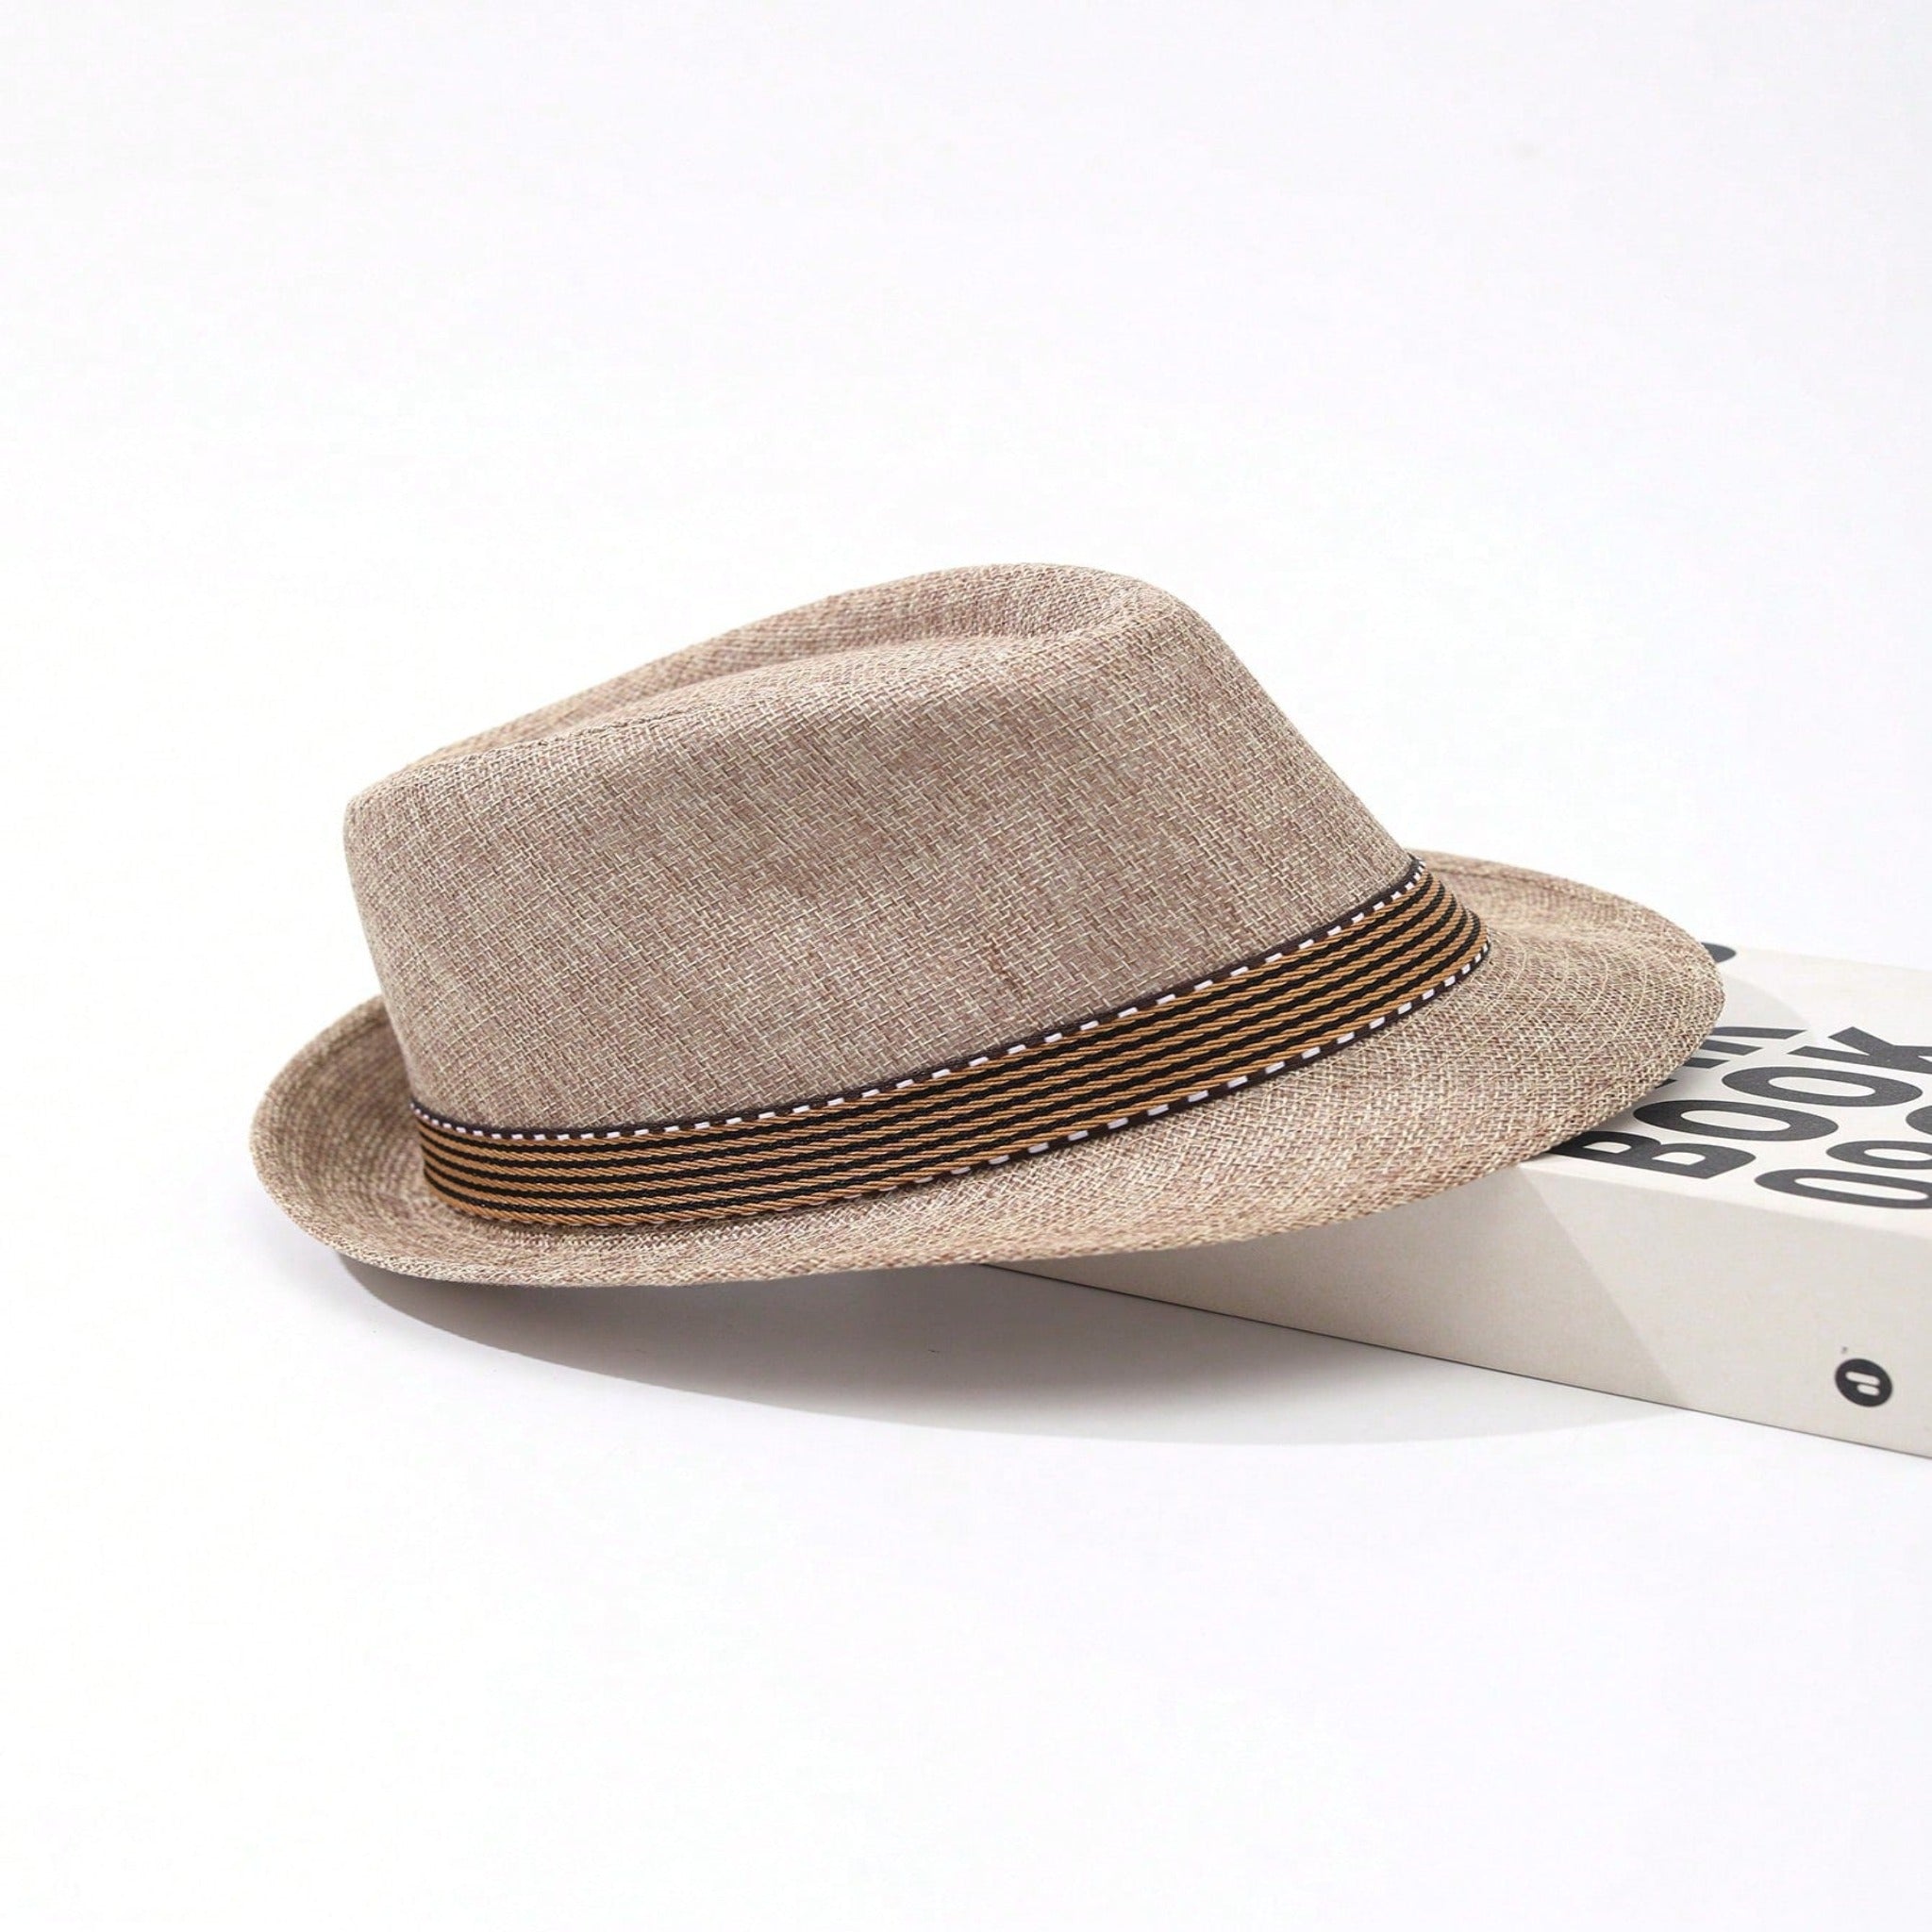 Beige Linen Fedora Hat - British Casual Gentleman's Style